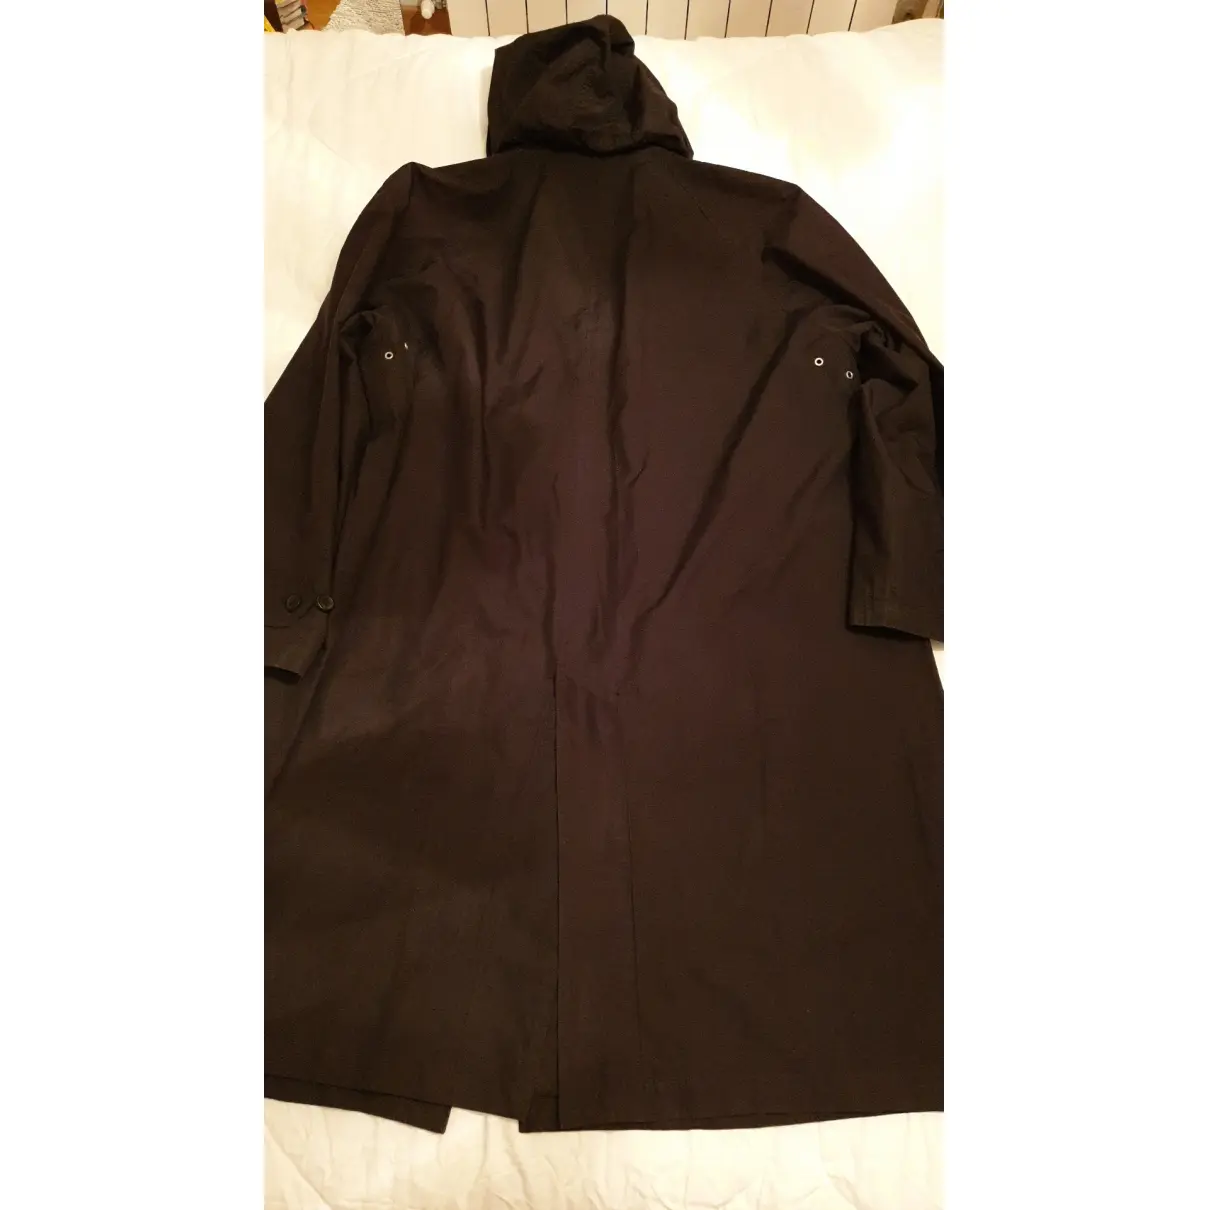 Buy Allegri Trench coat online